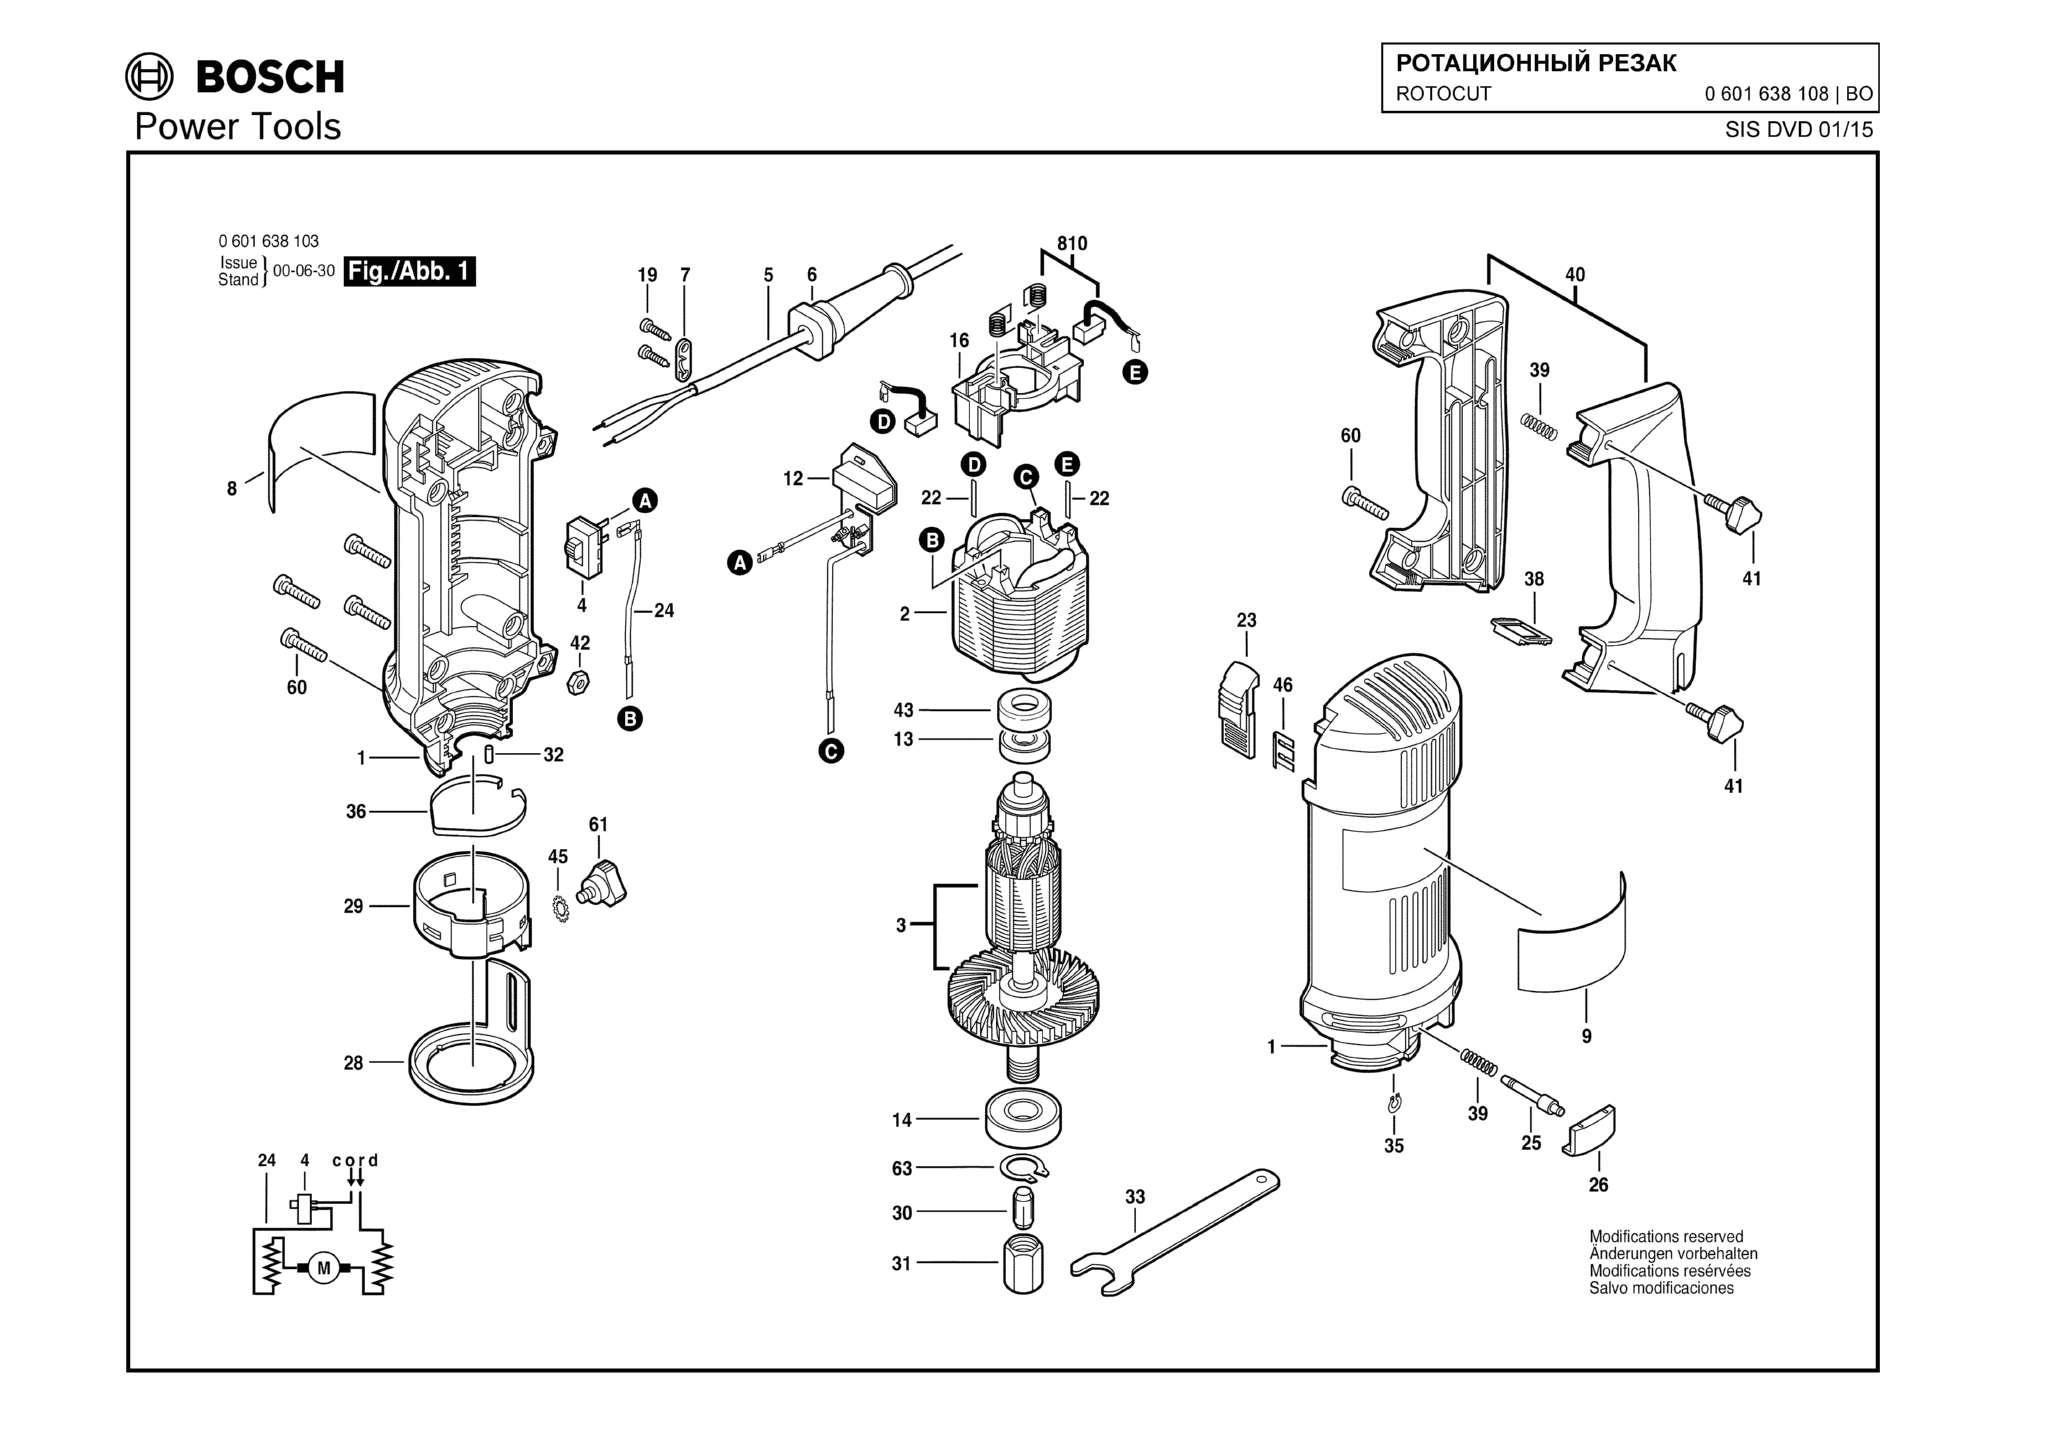 Запчасти, схема и деталировка Bosch ROTOCUT (ТИП 0601638108)